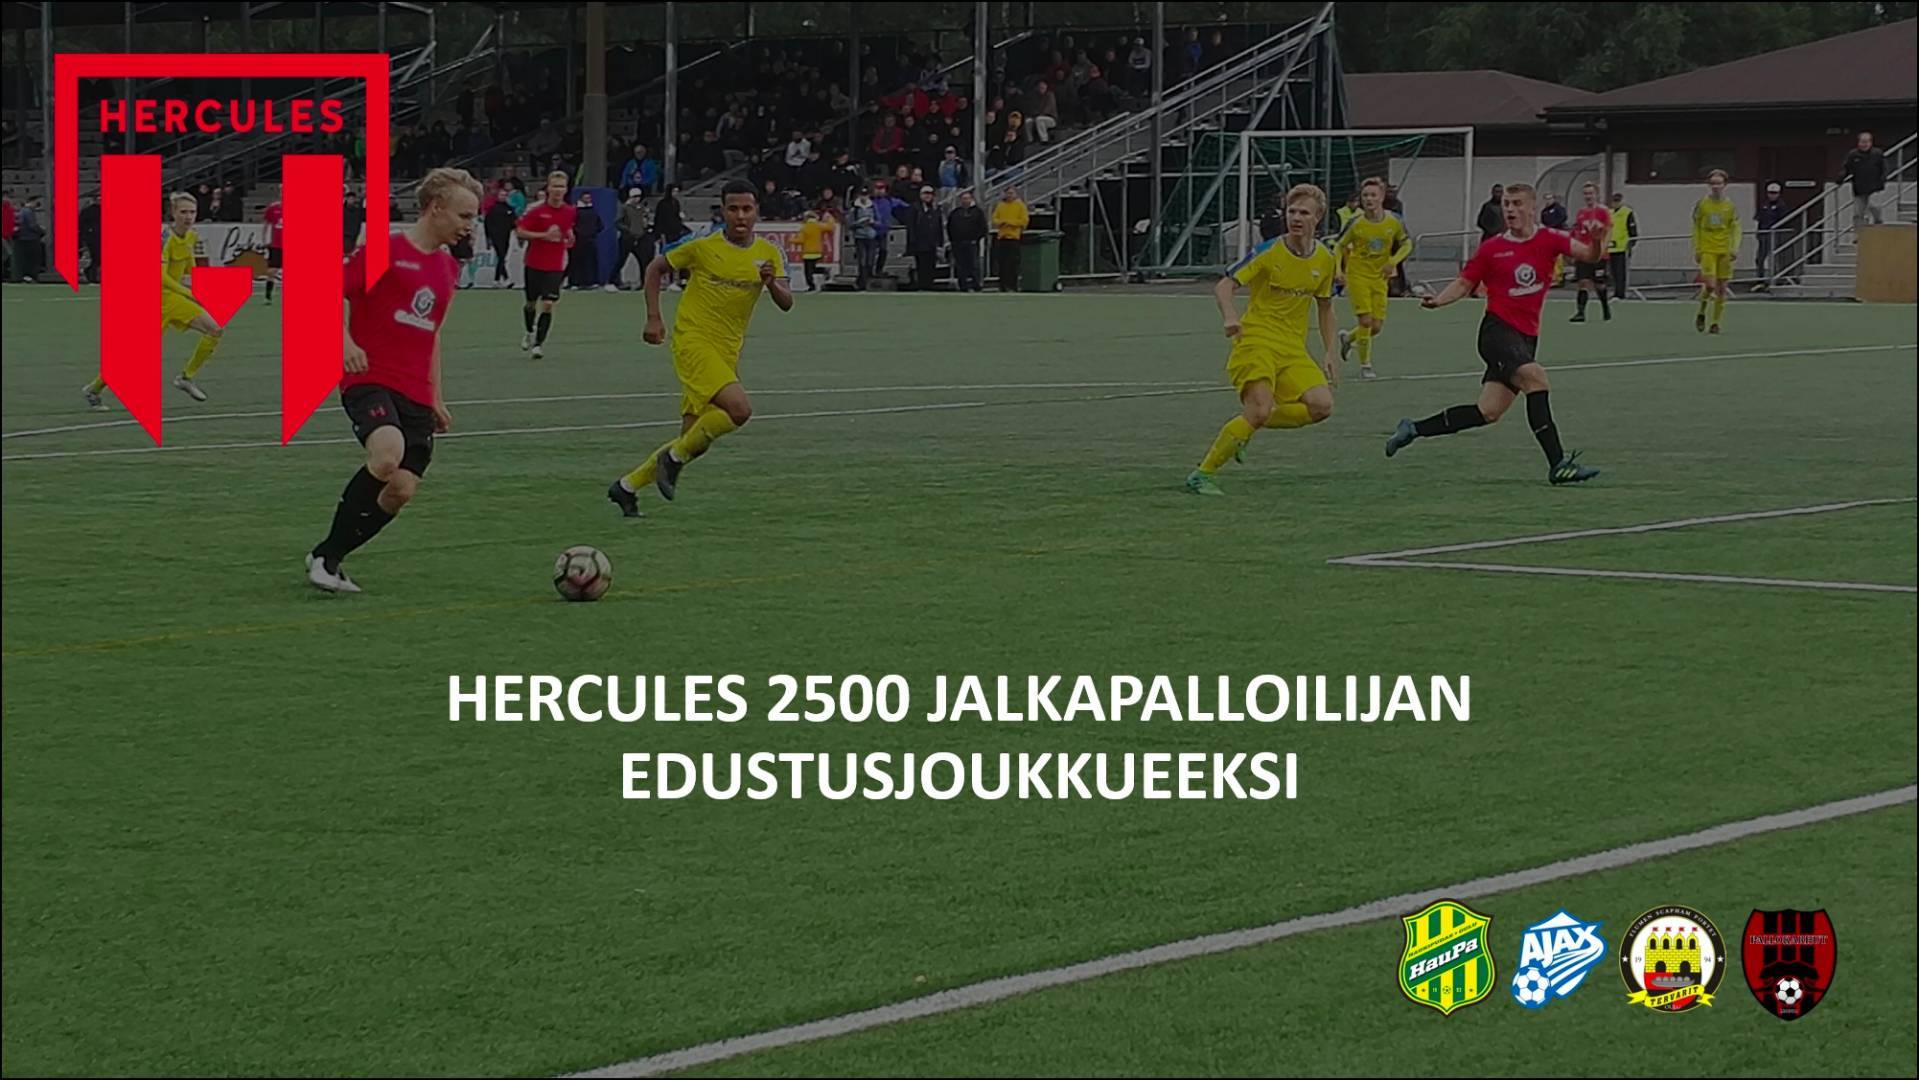 Hercules 2500 jalkapalloilijan edustusjoukkueeksi